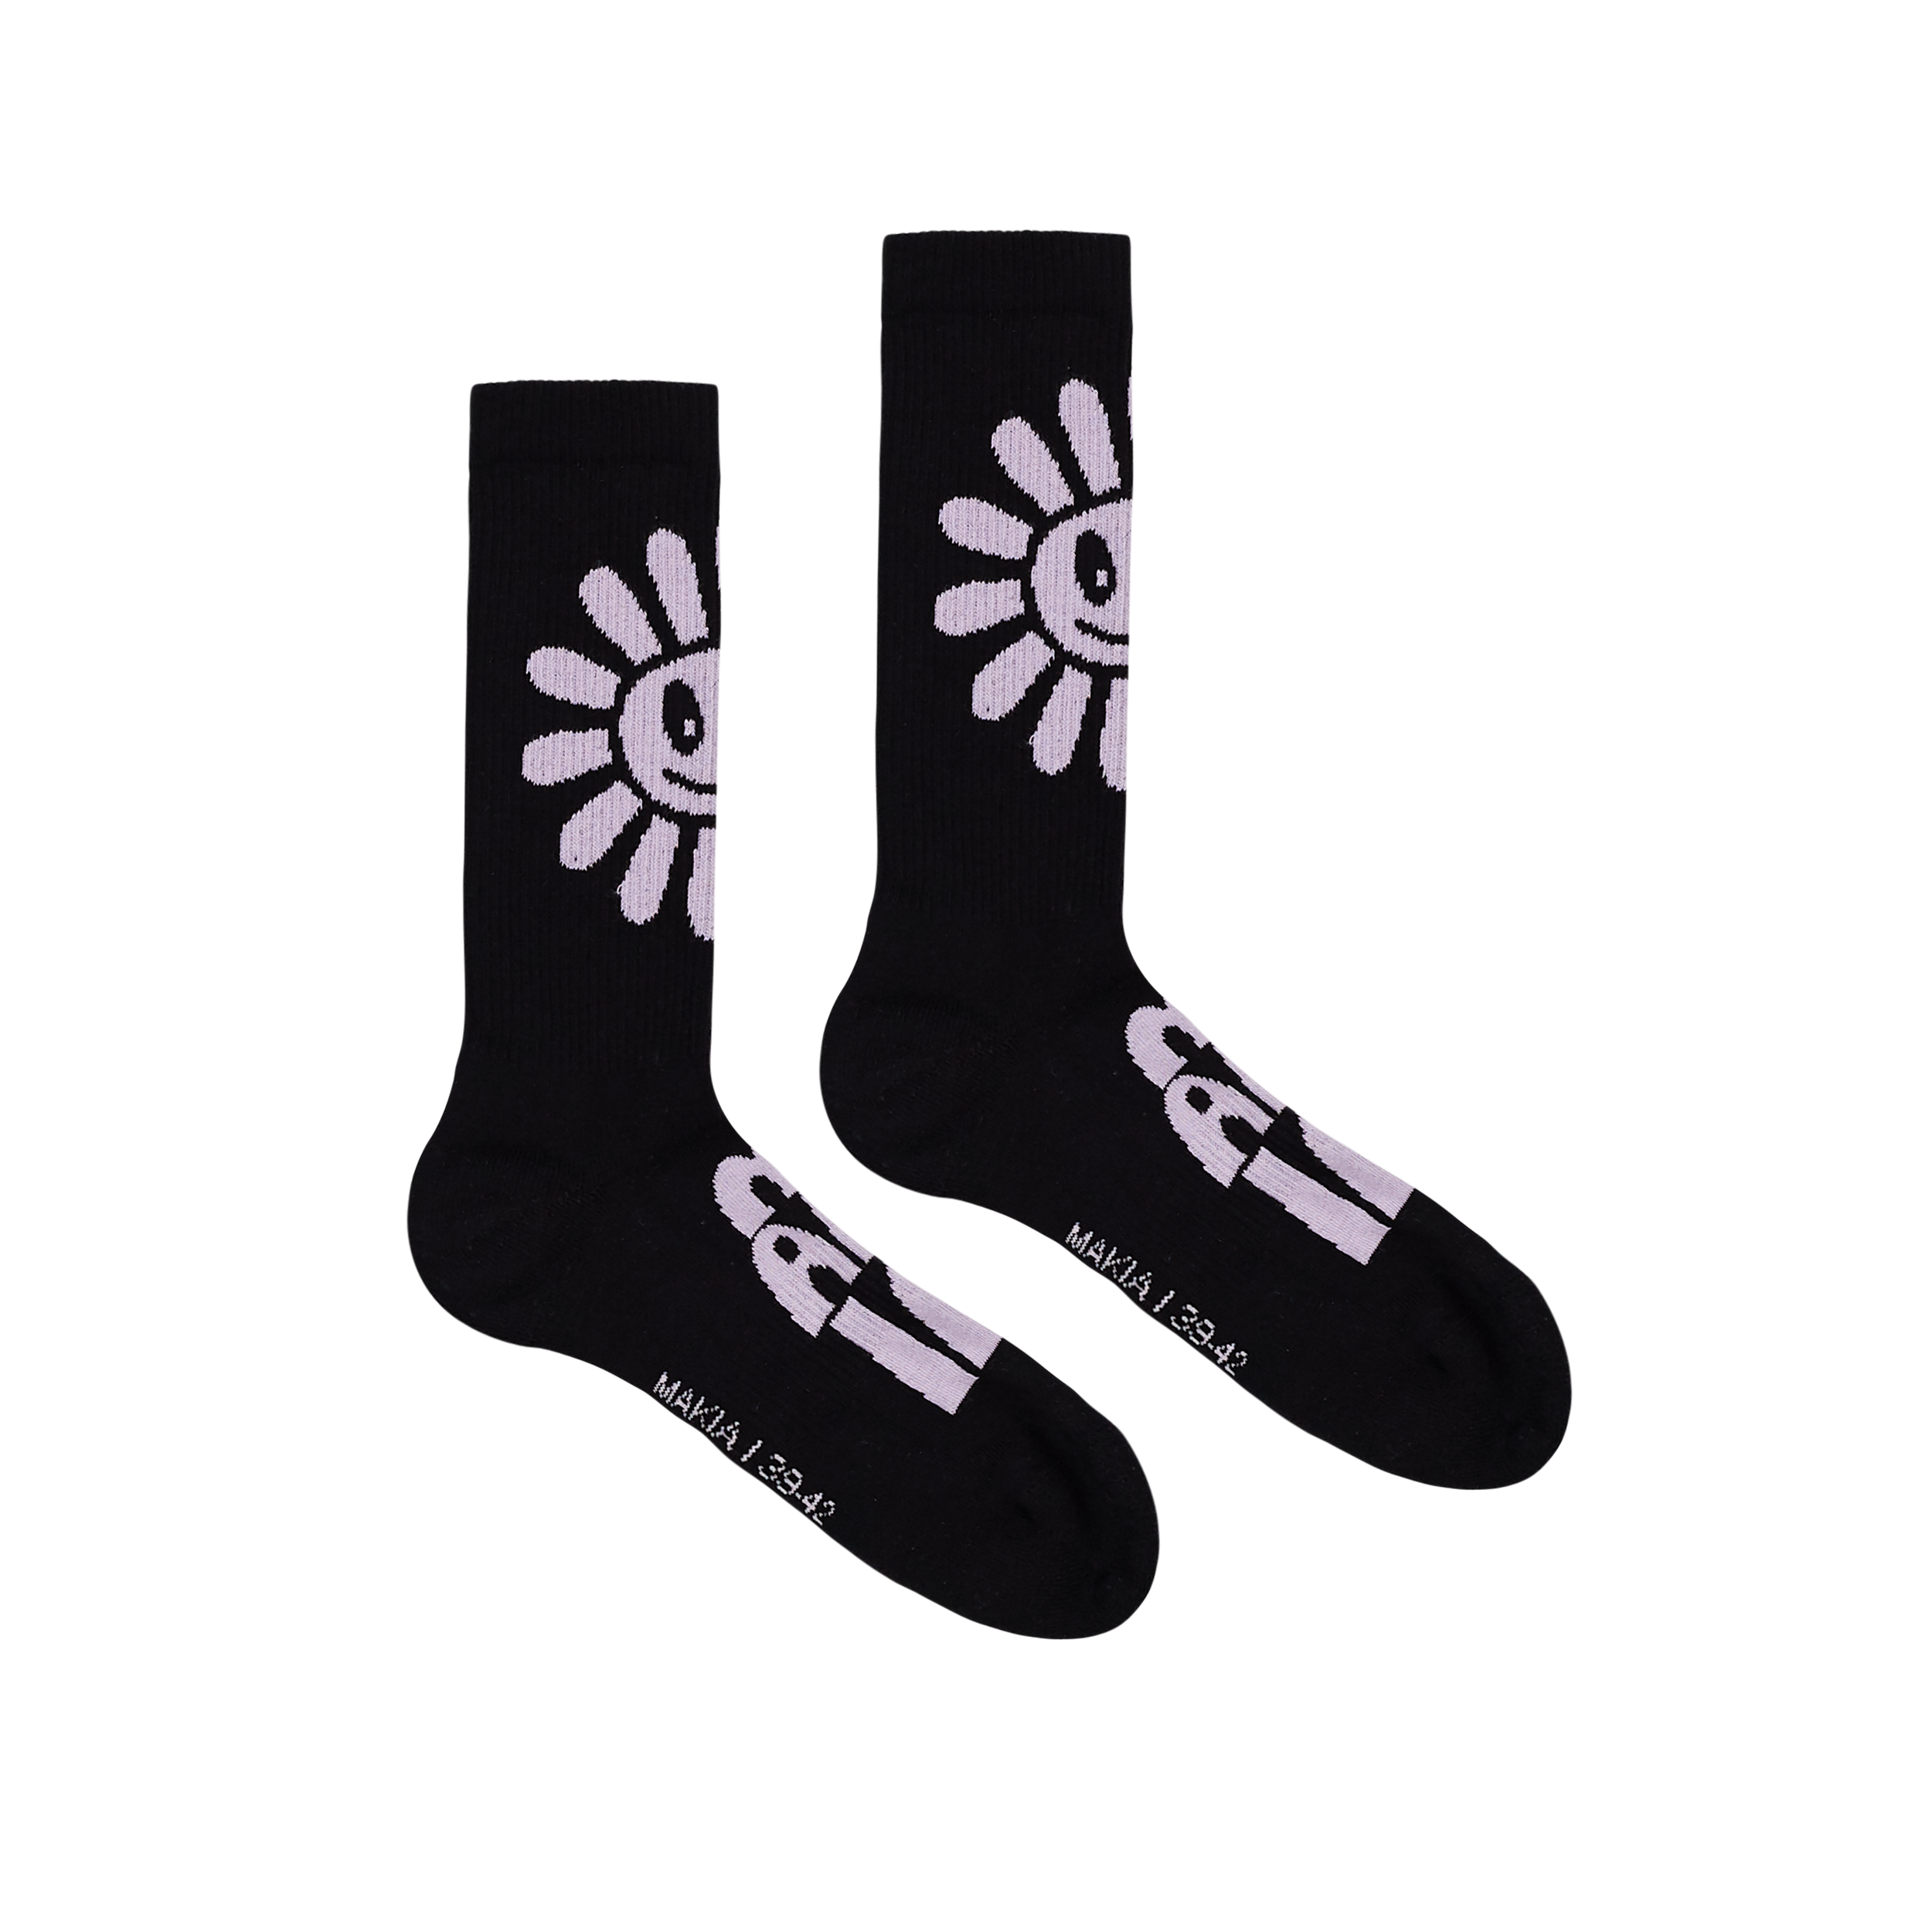 Flower socks